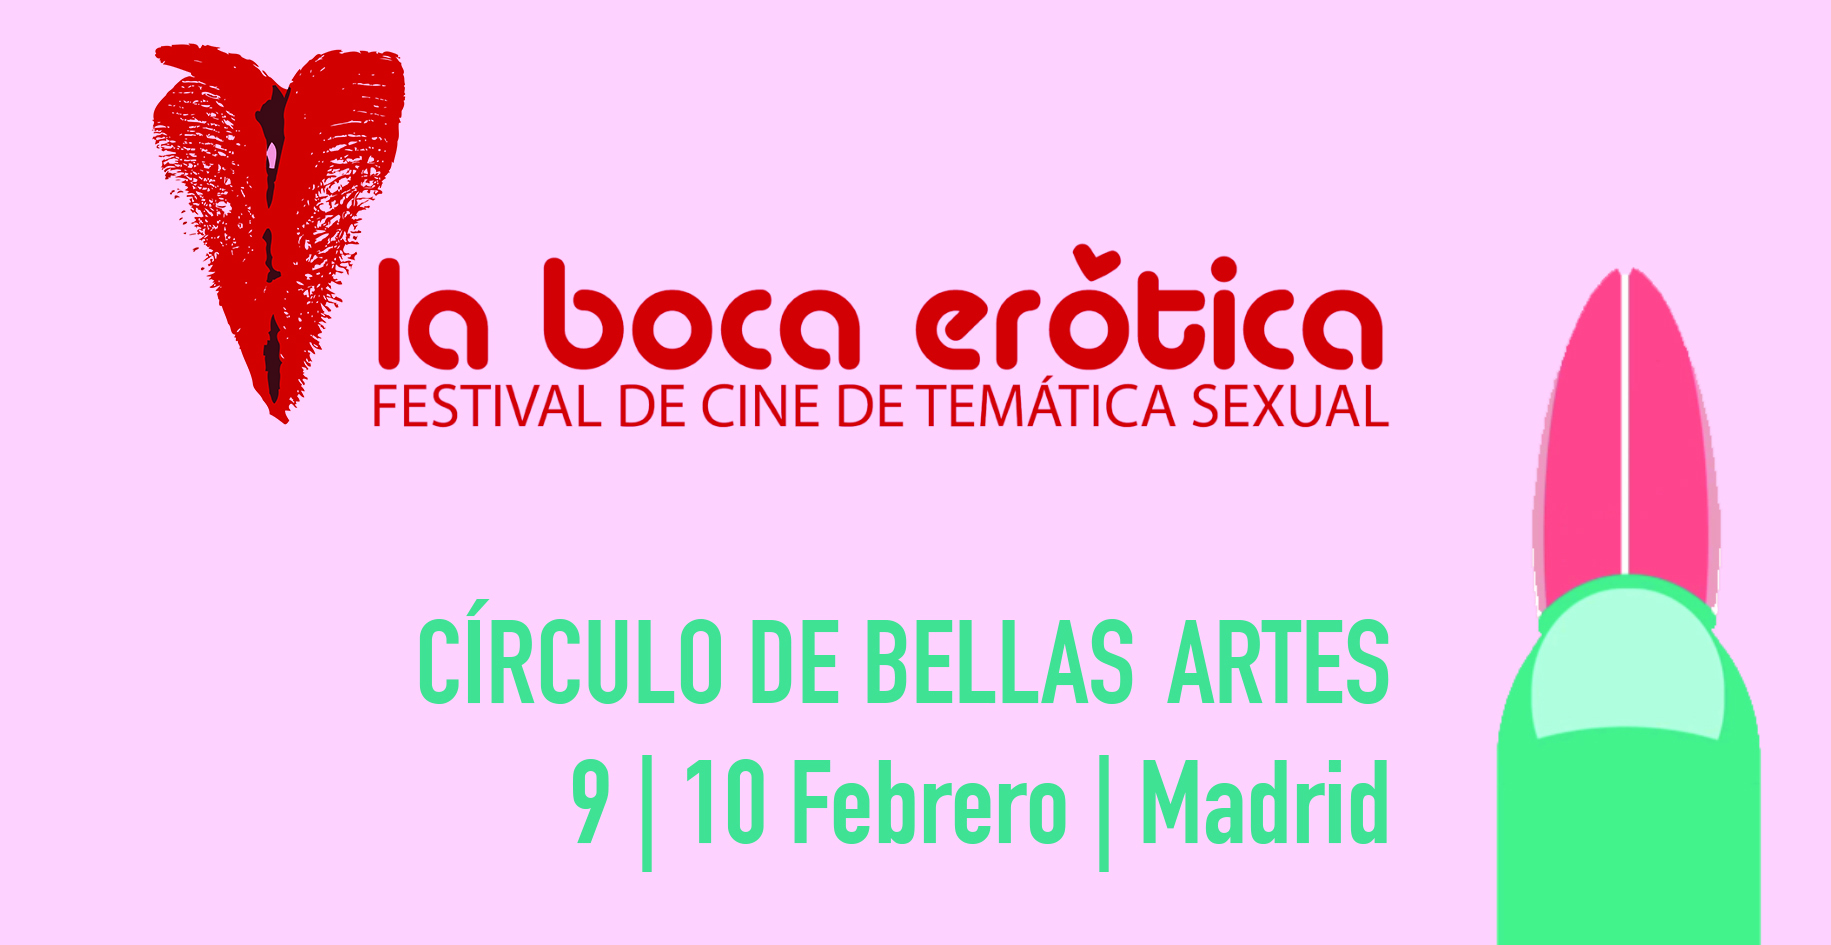 El Festival La Boca erótica regresa a Madrid